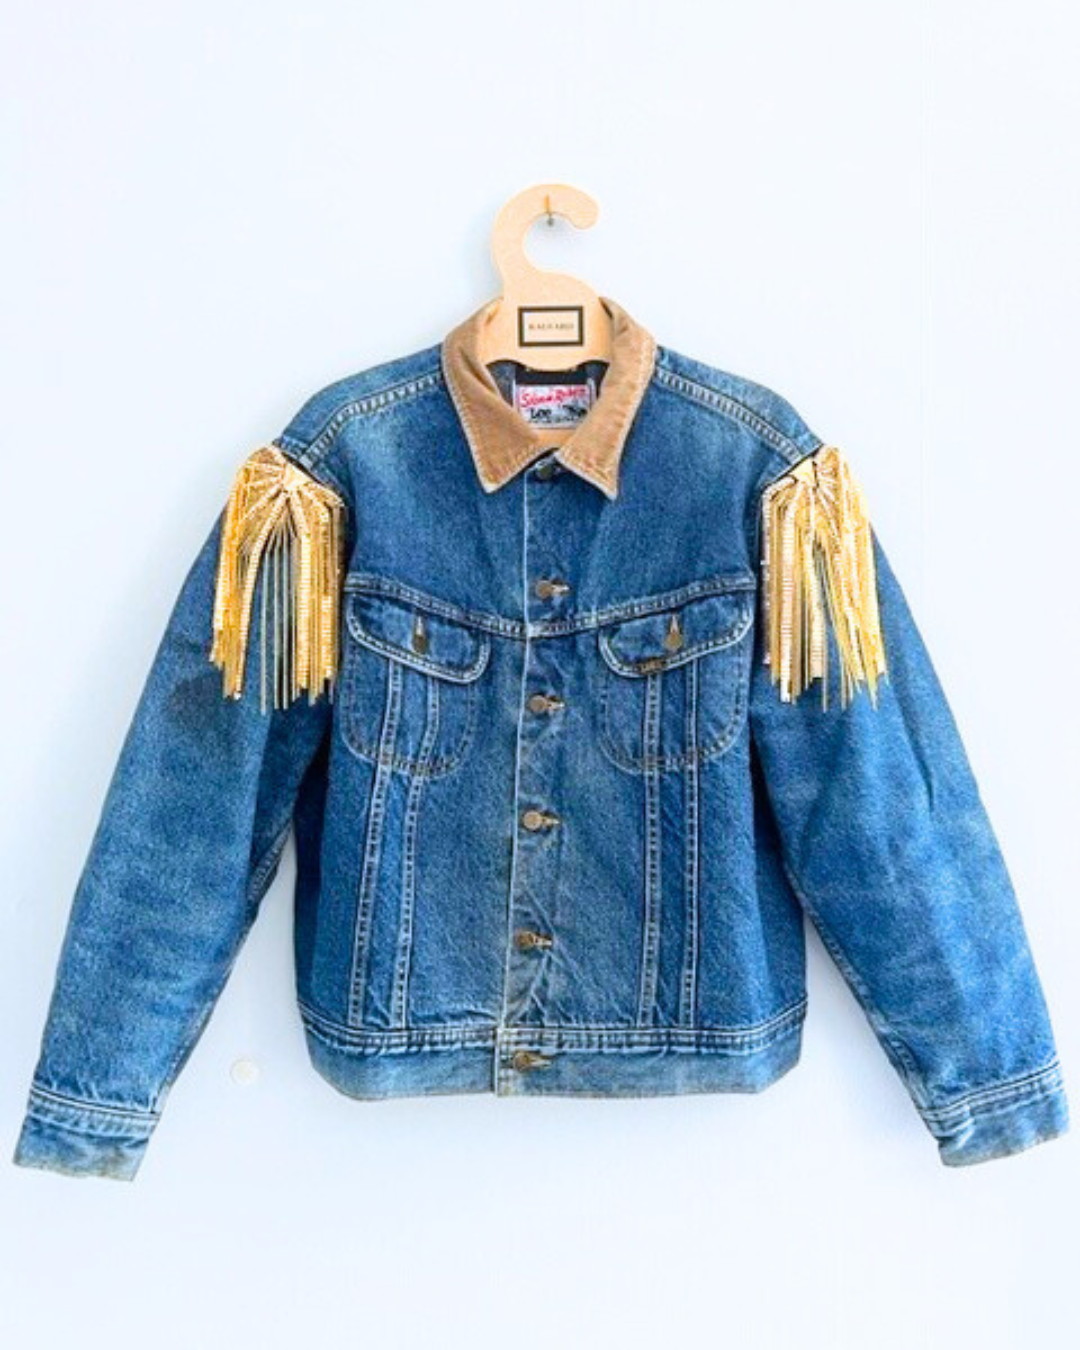 Vintage LEE STORMRIDER Mid wash denim jacket with gold chain shoulder embellishment